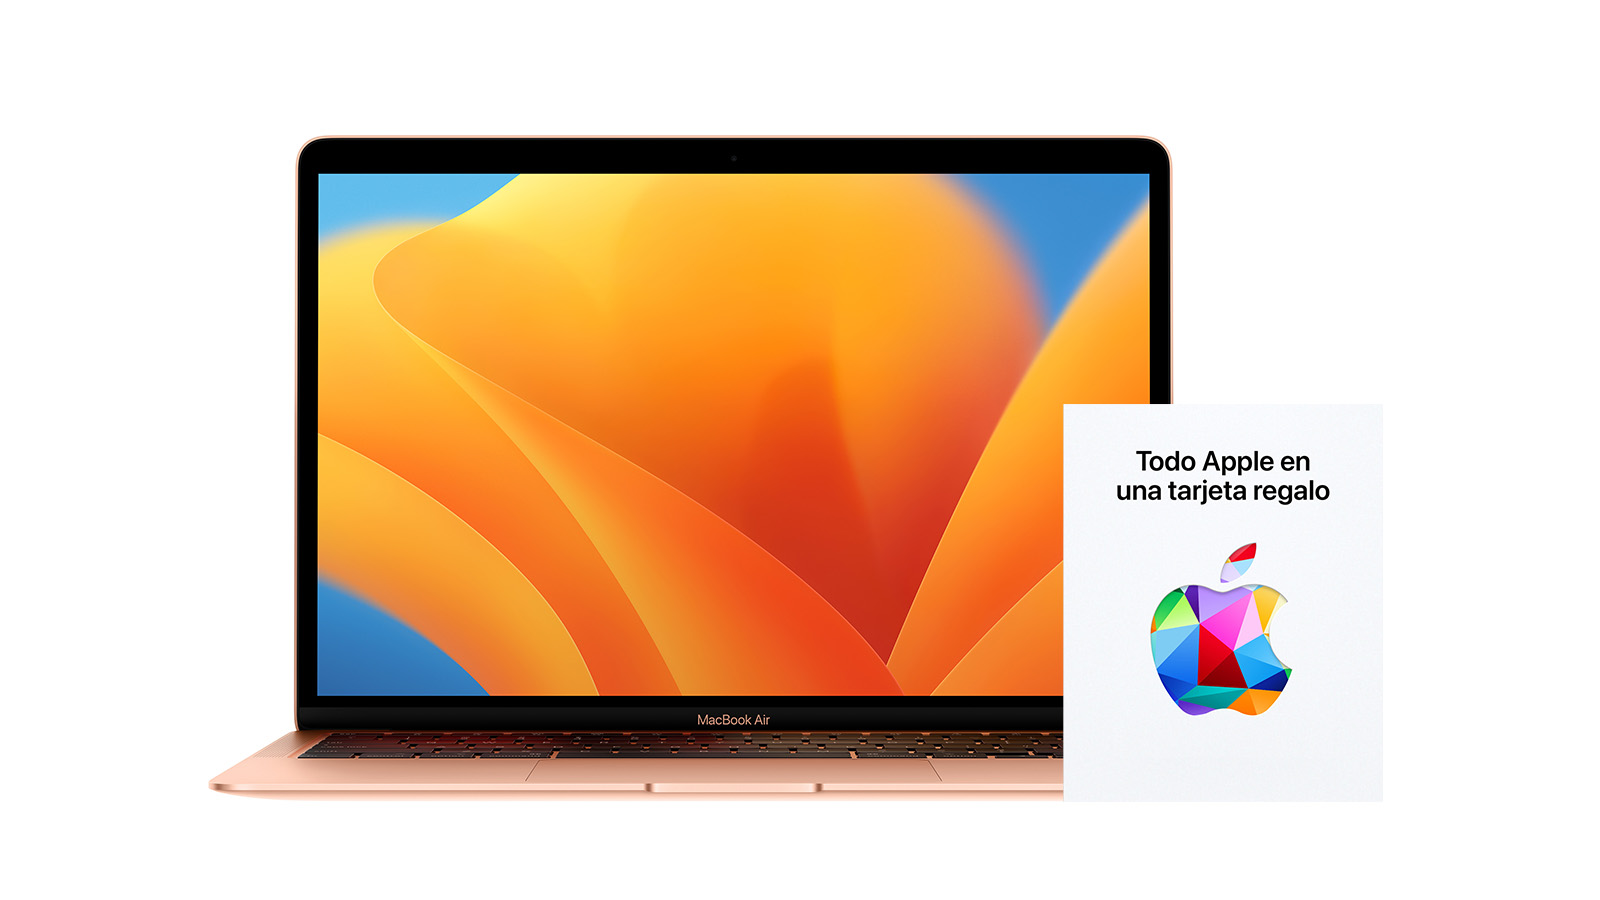 MacBook Air (M1) + tarjeta regalo